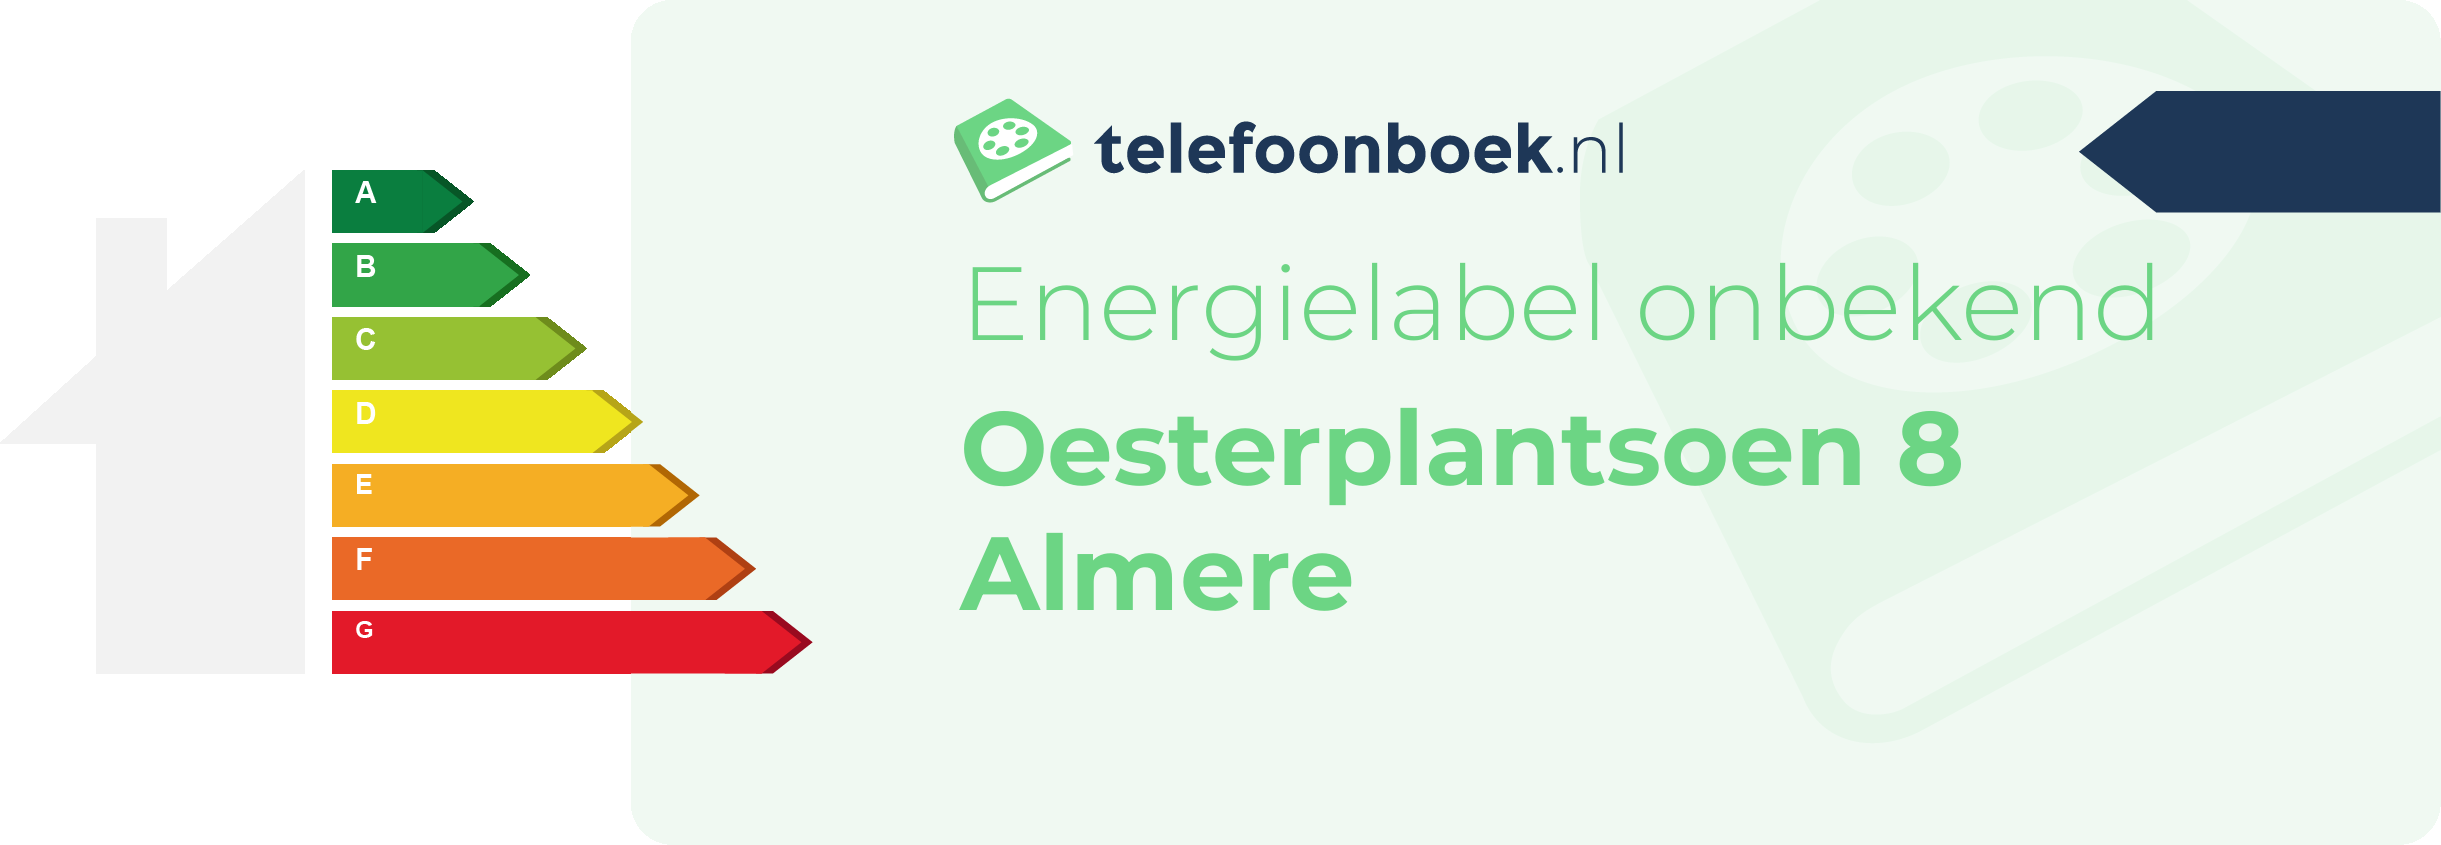 Energielabel Oesterplantsoen 8 Almere